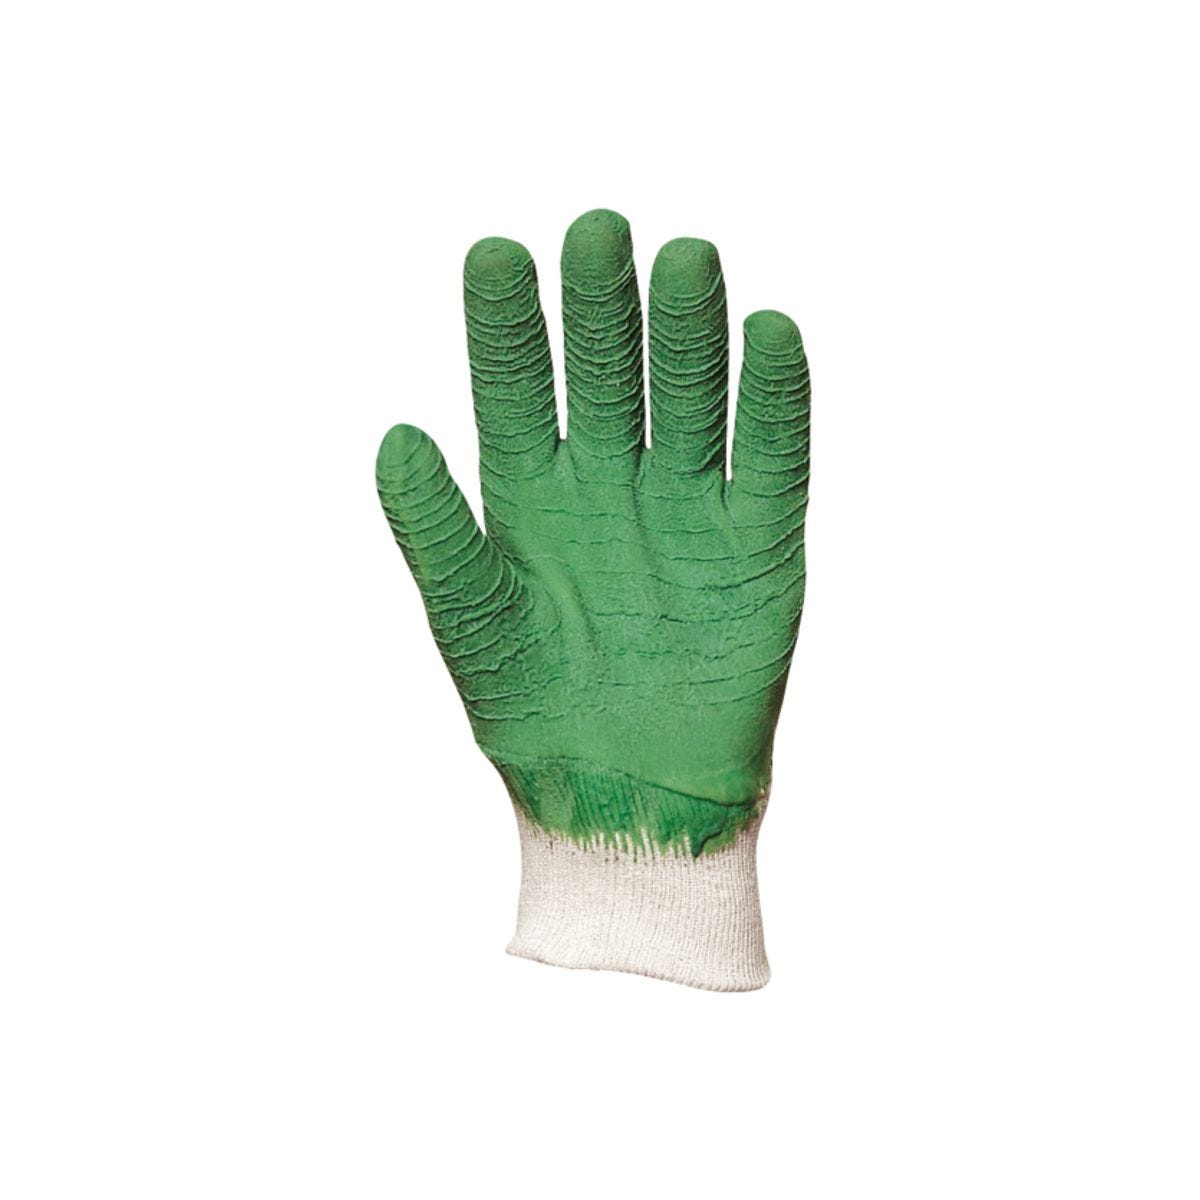 Gants latex crépé vert, dos aéré standard - COVERGUARD - Taille M-8 1